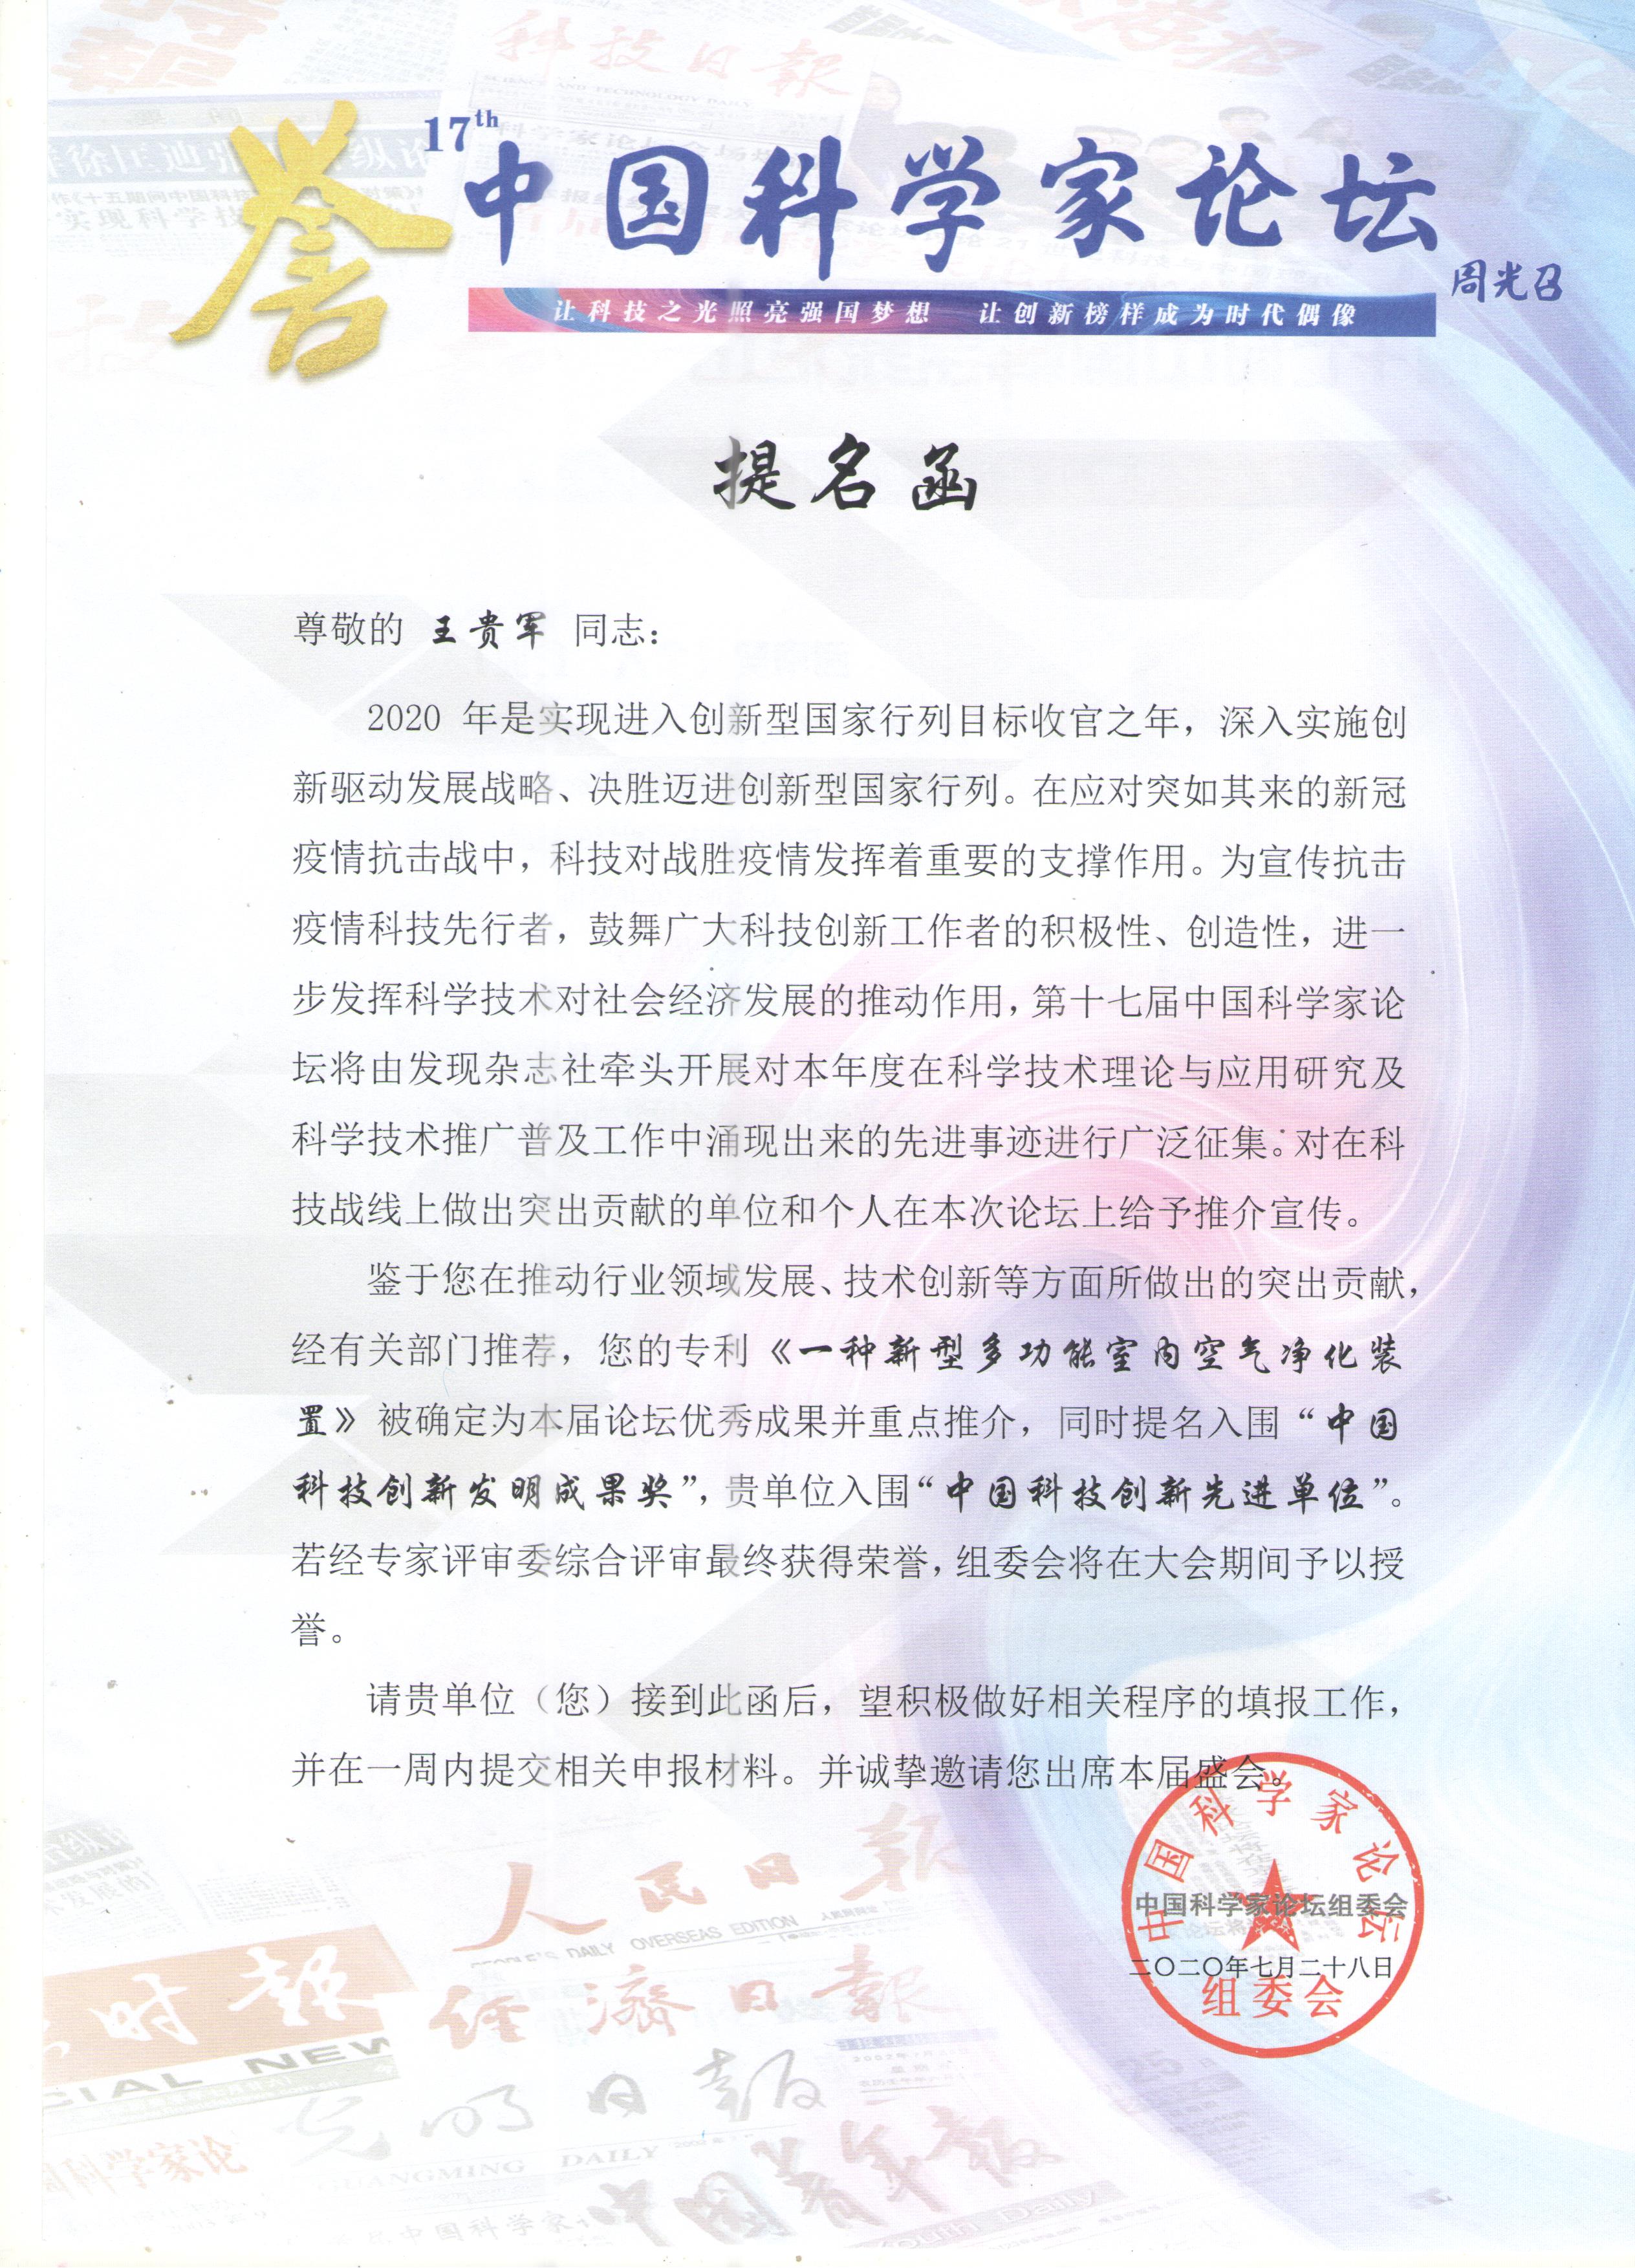 格瑞乐新型专利入围中国科技创新发明成果奖